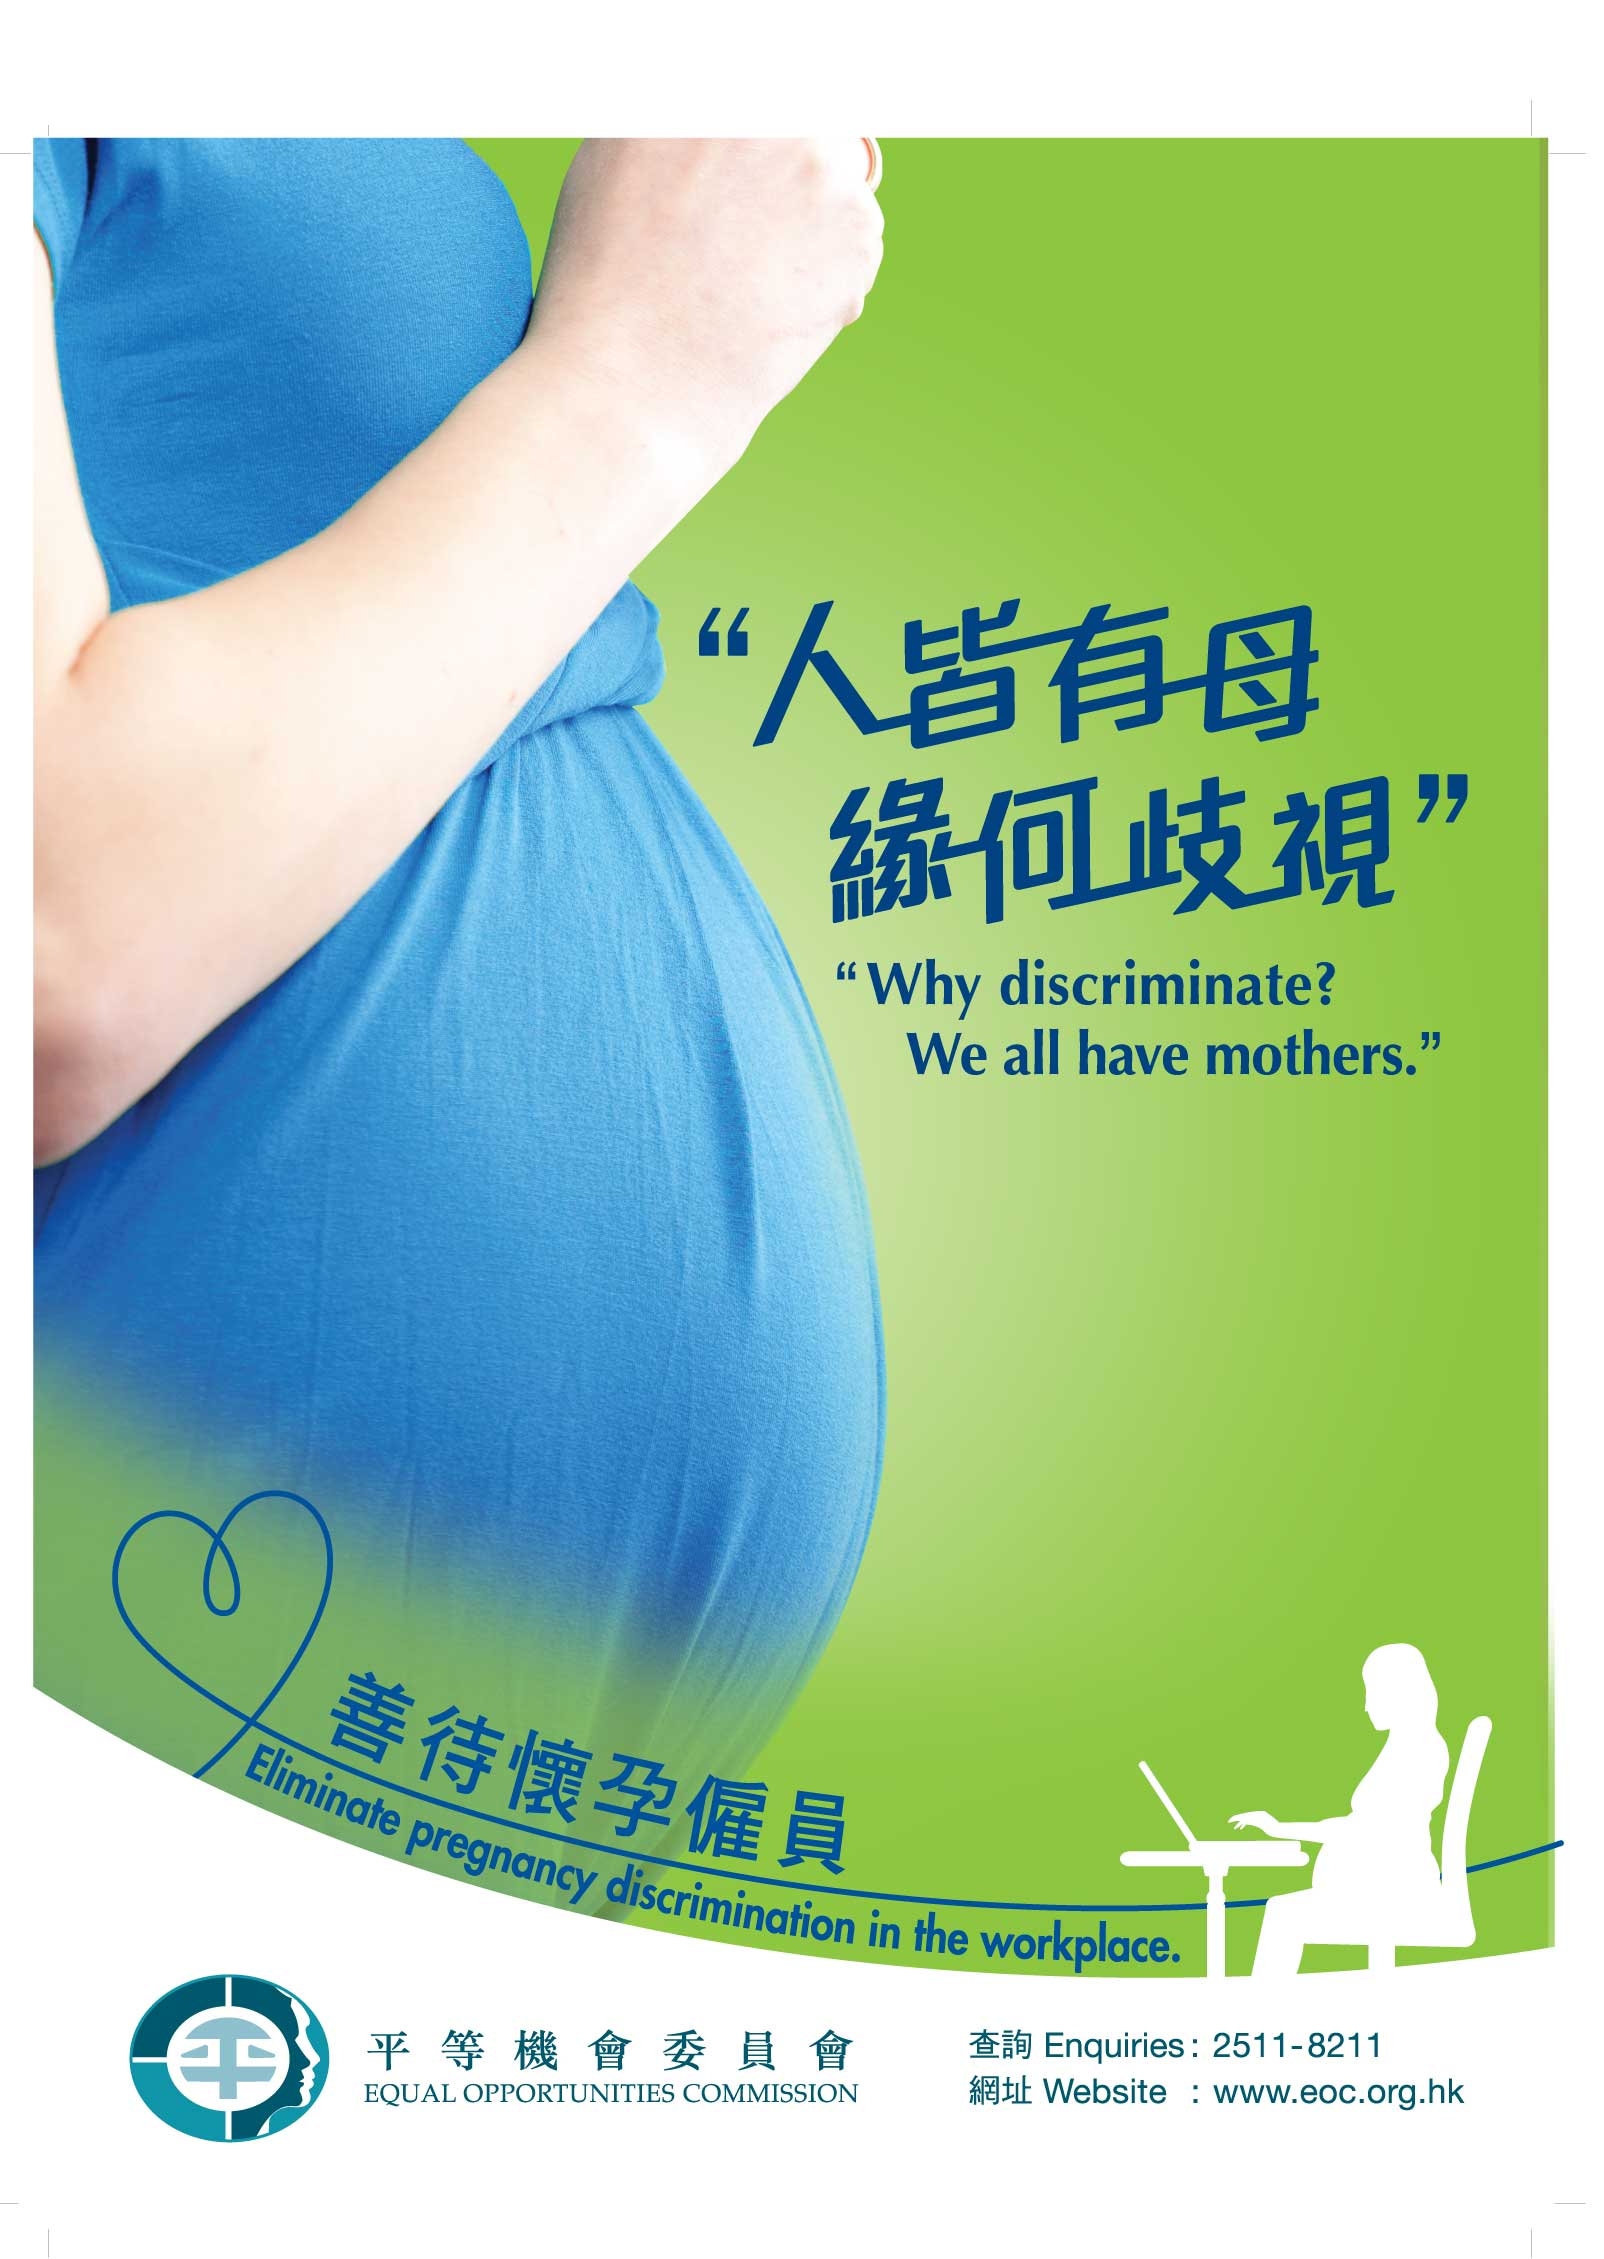 平機會宣傳反懷孕歧視信息的海報